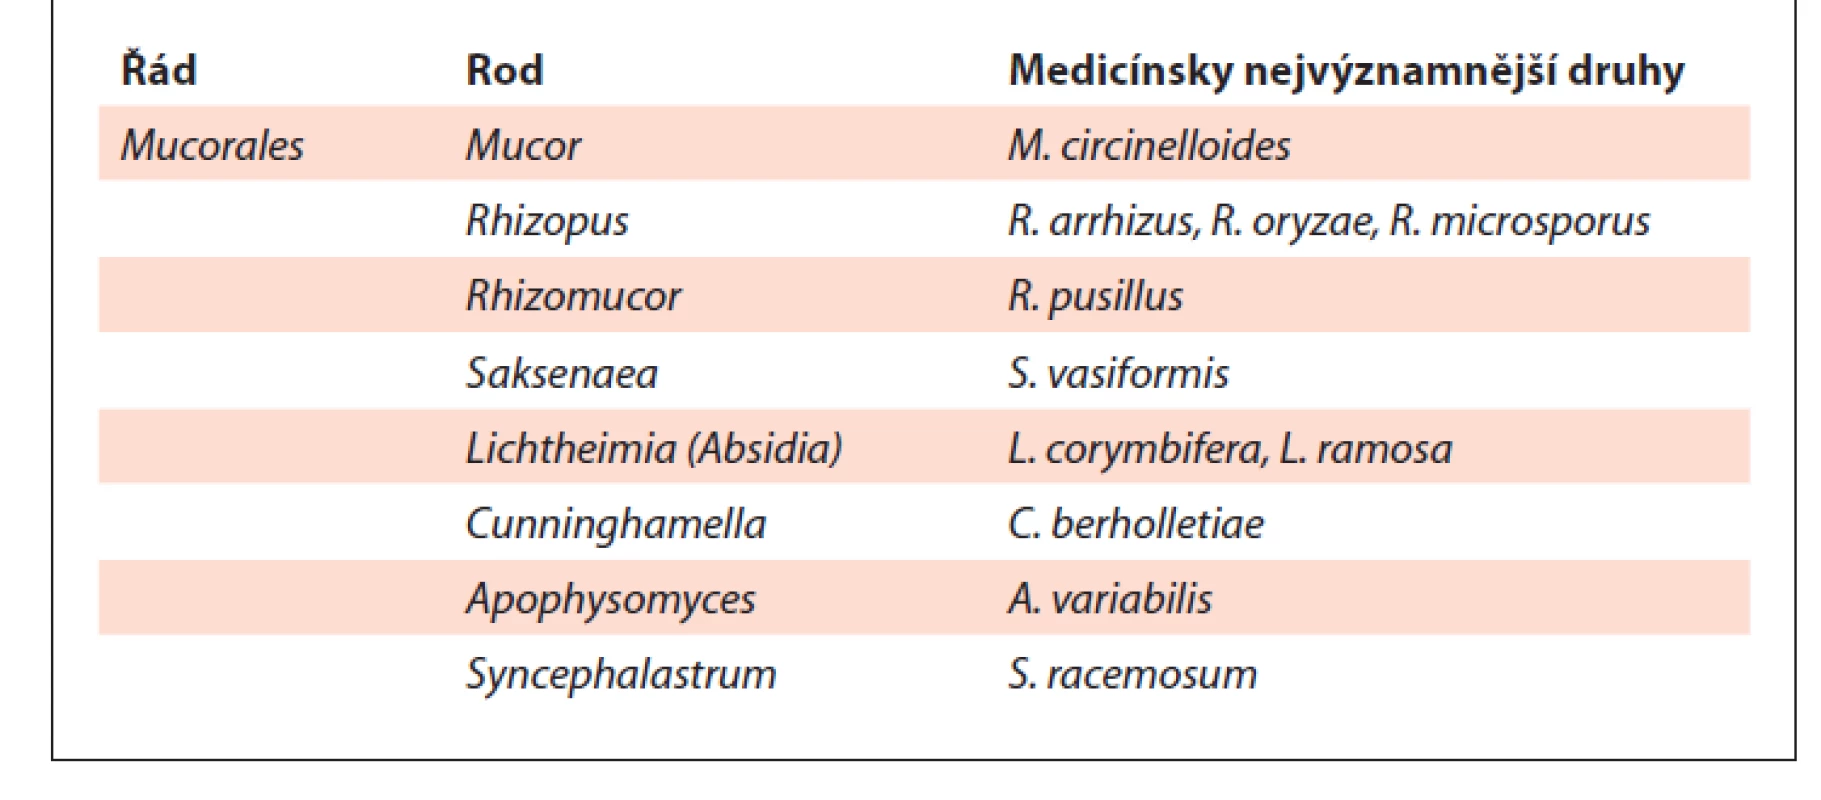 Přehled klinicky nejvýznamnějších druhů řádu Mucorales
(volně upraveno podle [2]).